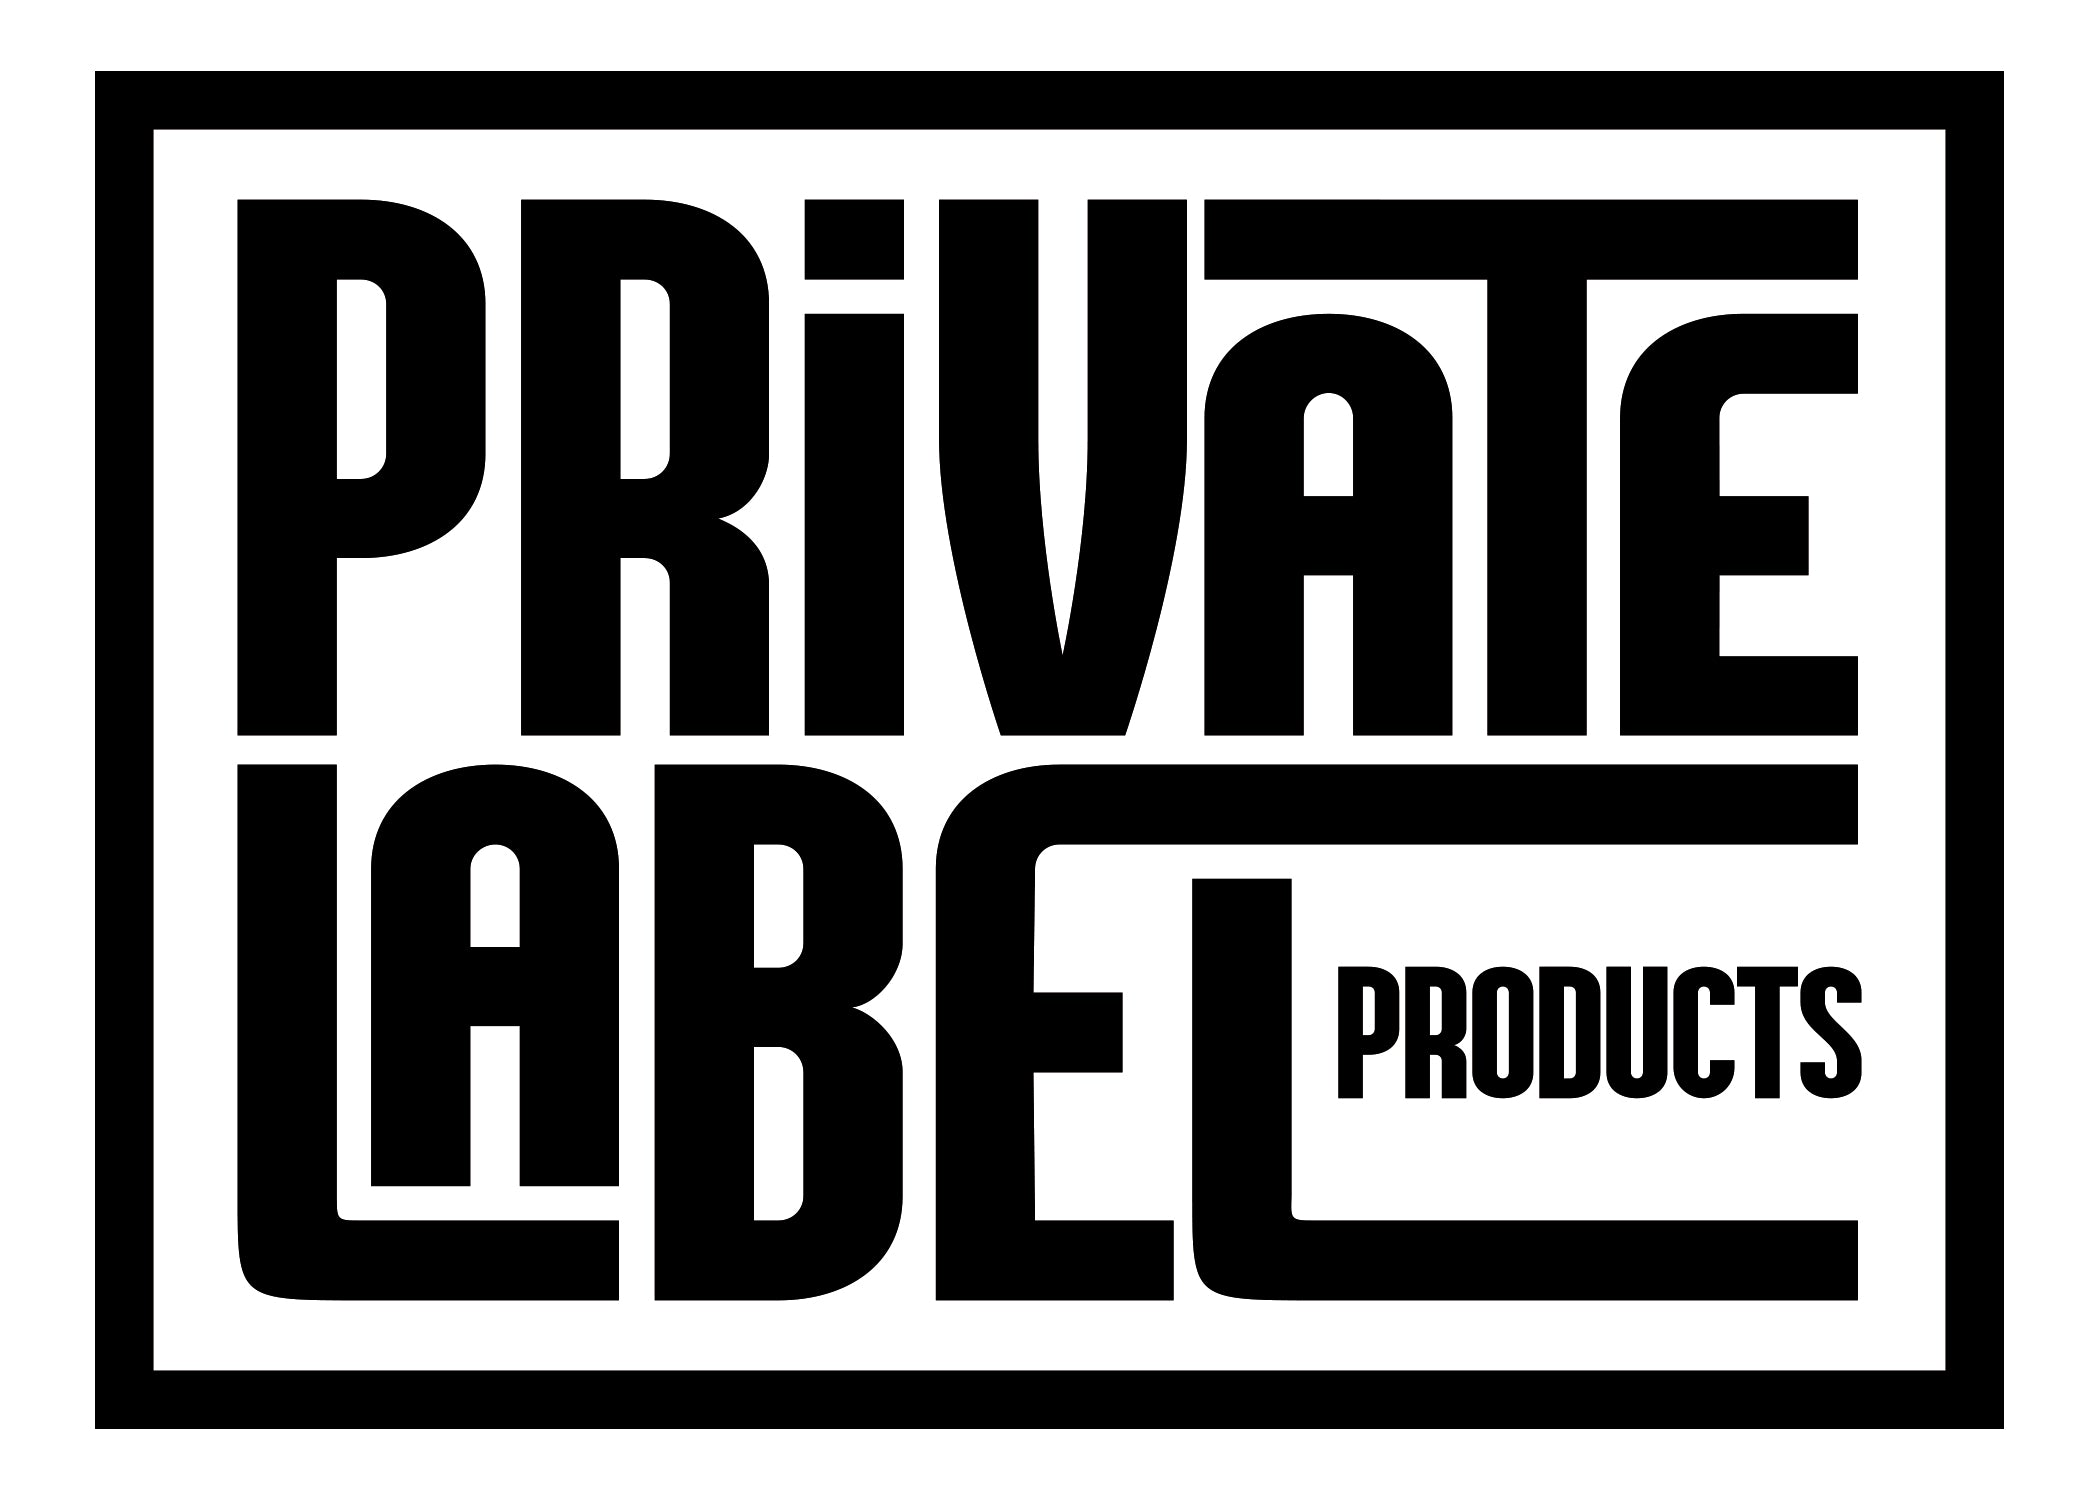 Private Label